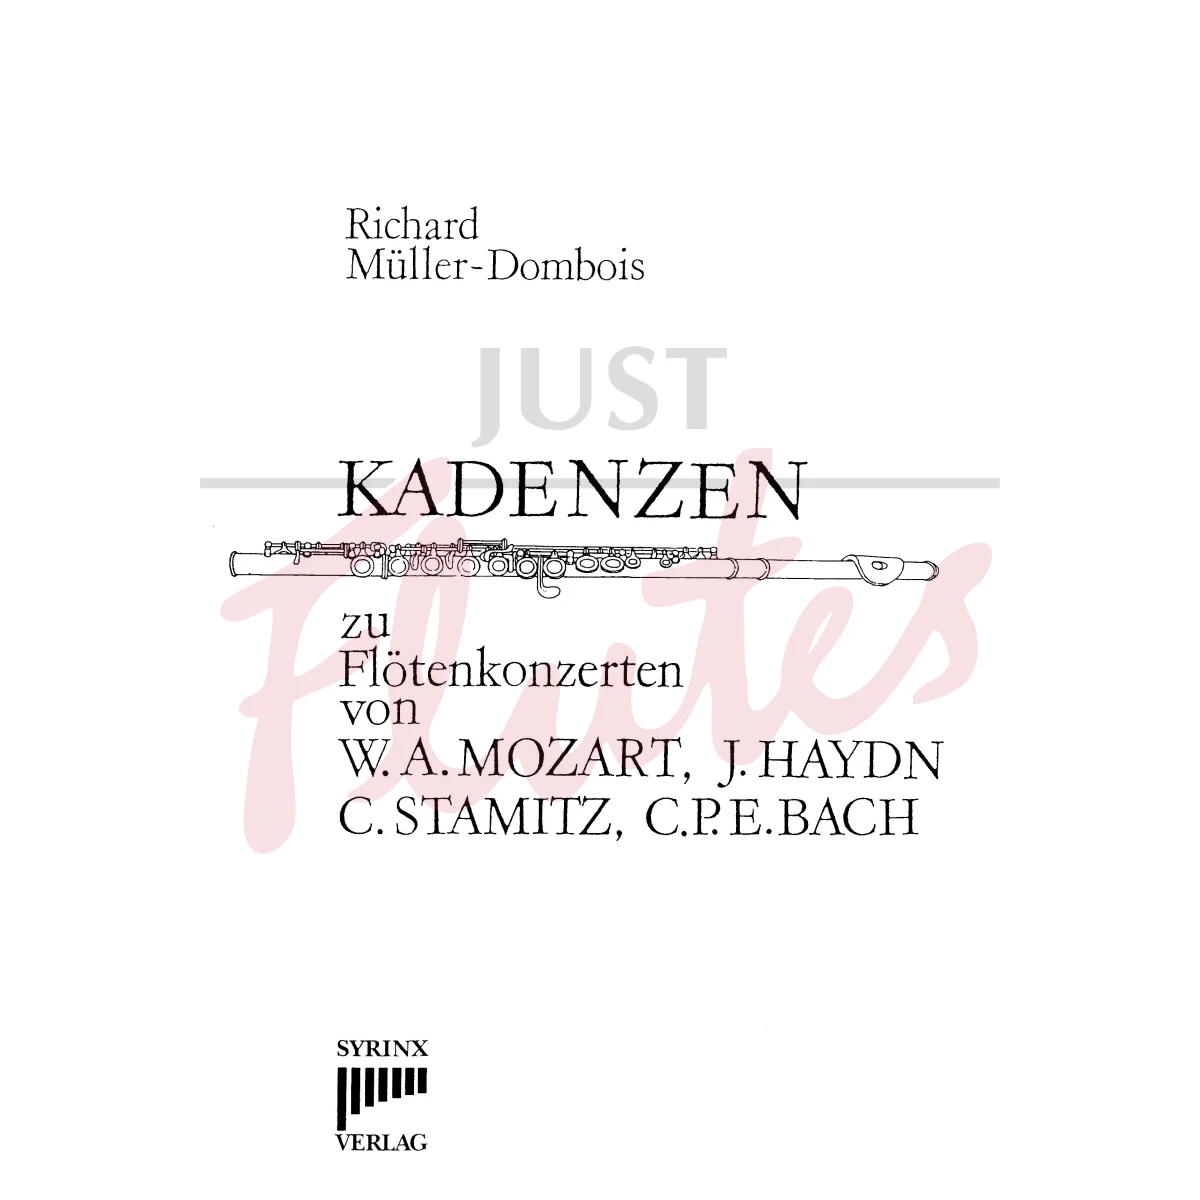 Cadenzas for Flute Concertos by W.A. Mozart, J. Haydn, C. Stamitz, and C.P.E. Bach